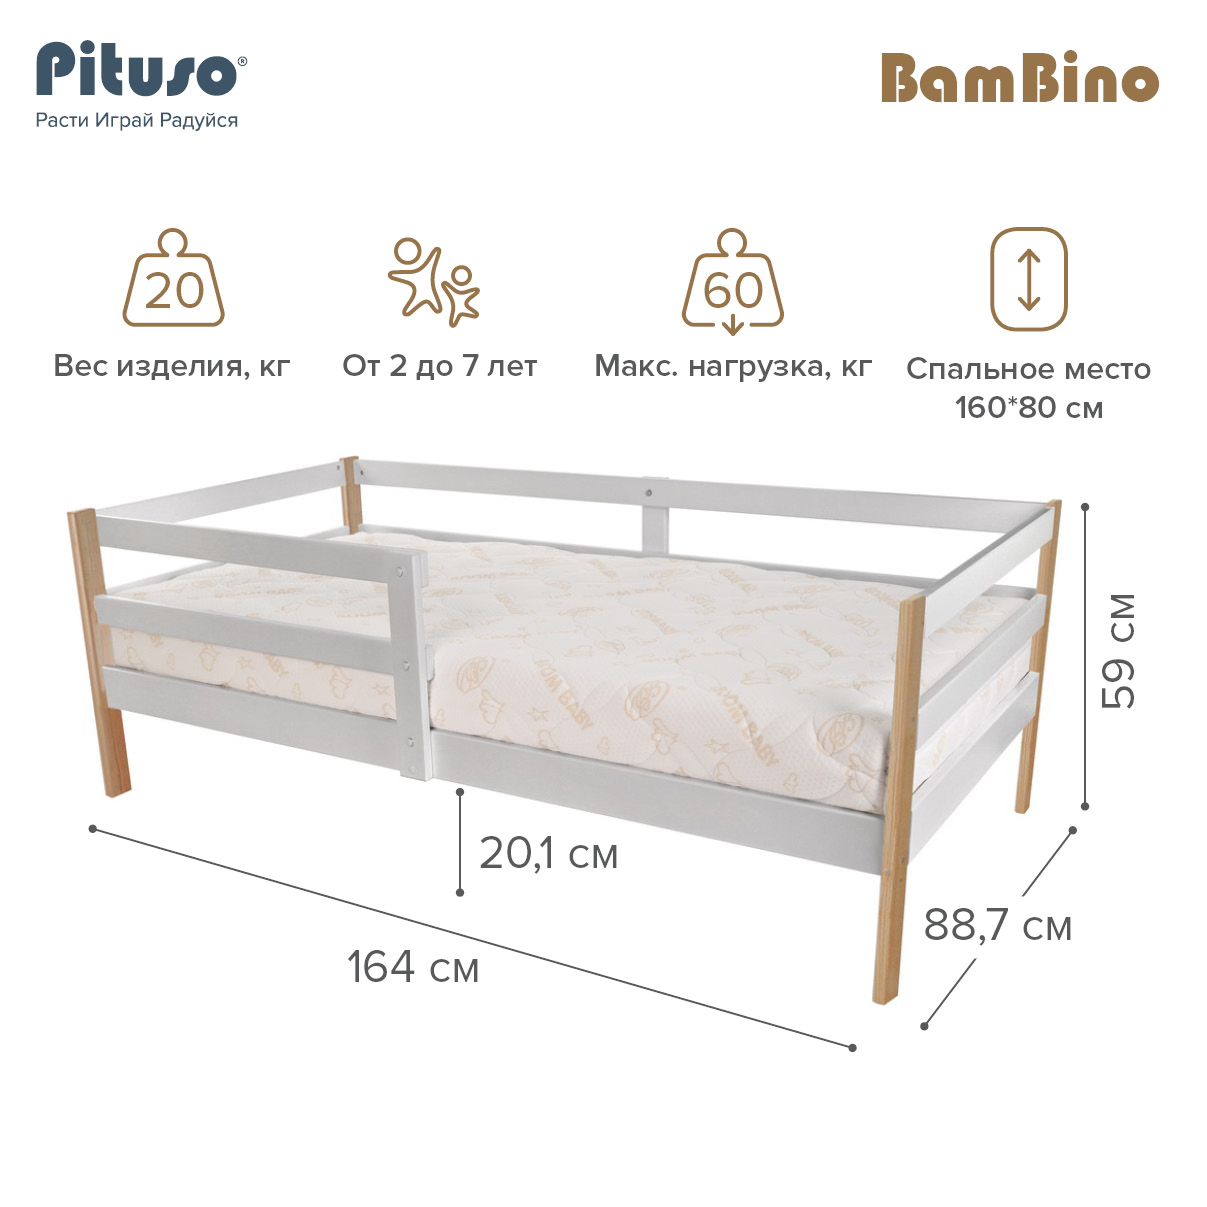 Кровать подростковая Pituso BamBino Белый-Бук подростковая кровать pituso emilia j 501